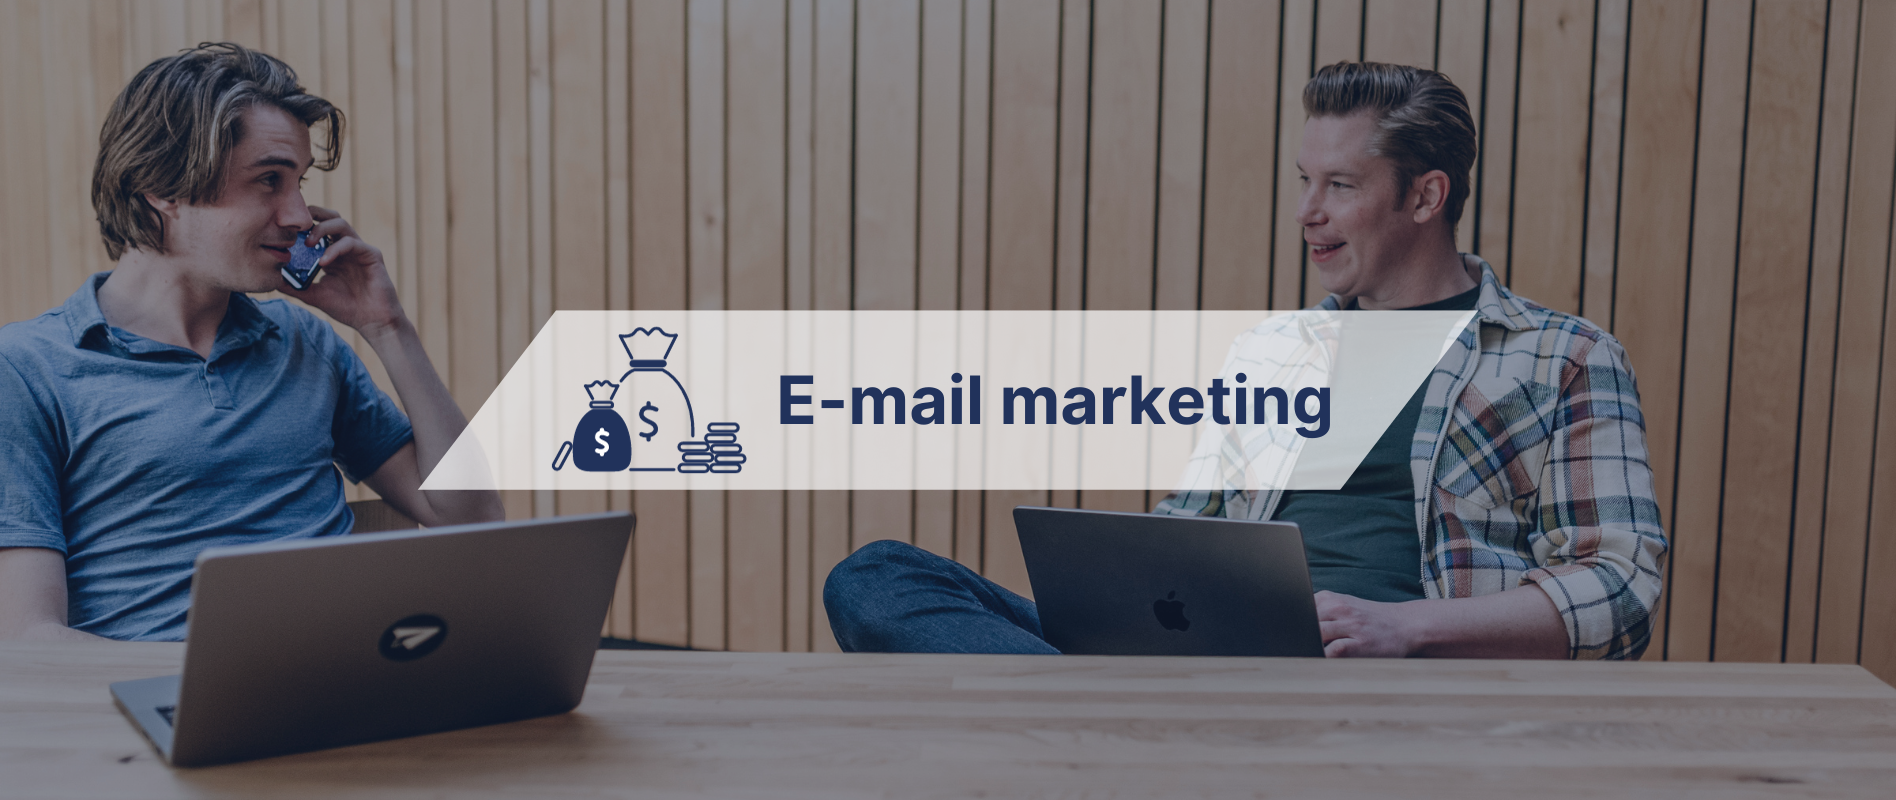 5 veelvoorkomende misvattingen over e-mail marketing